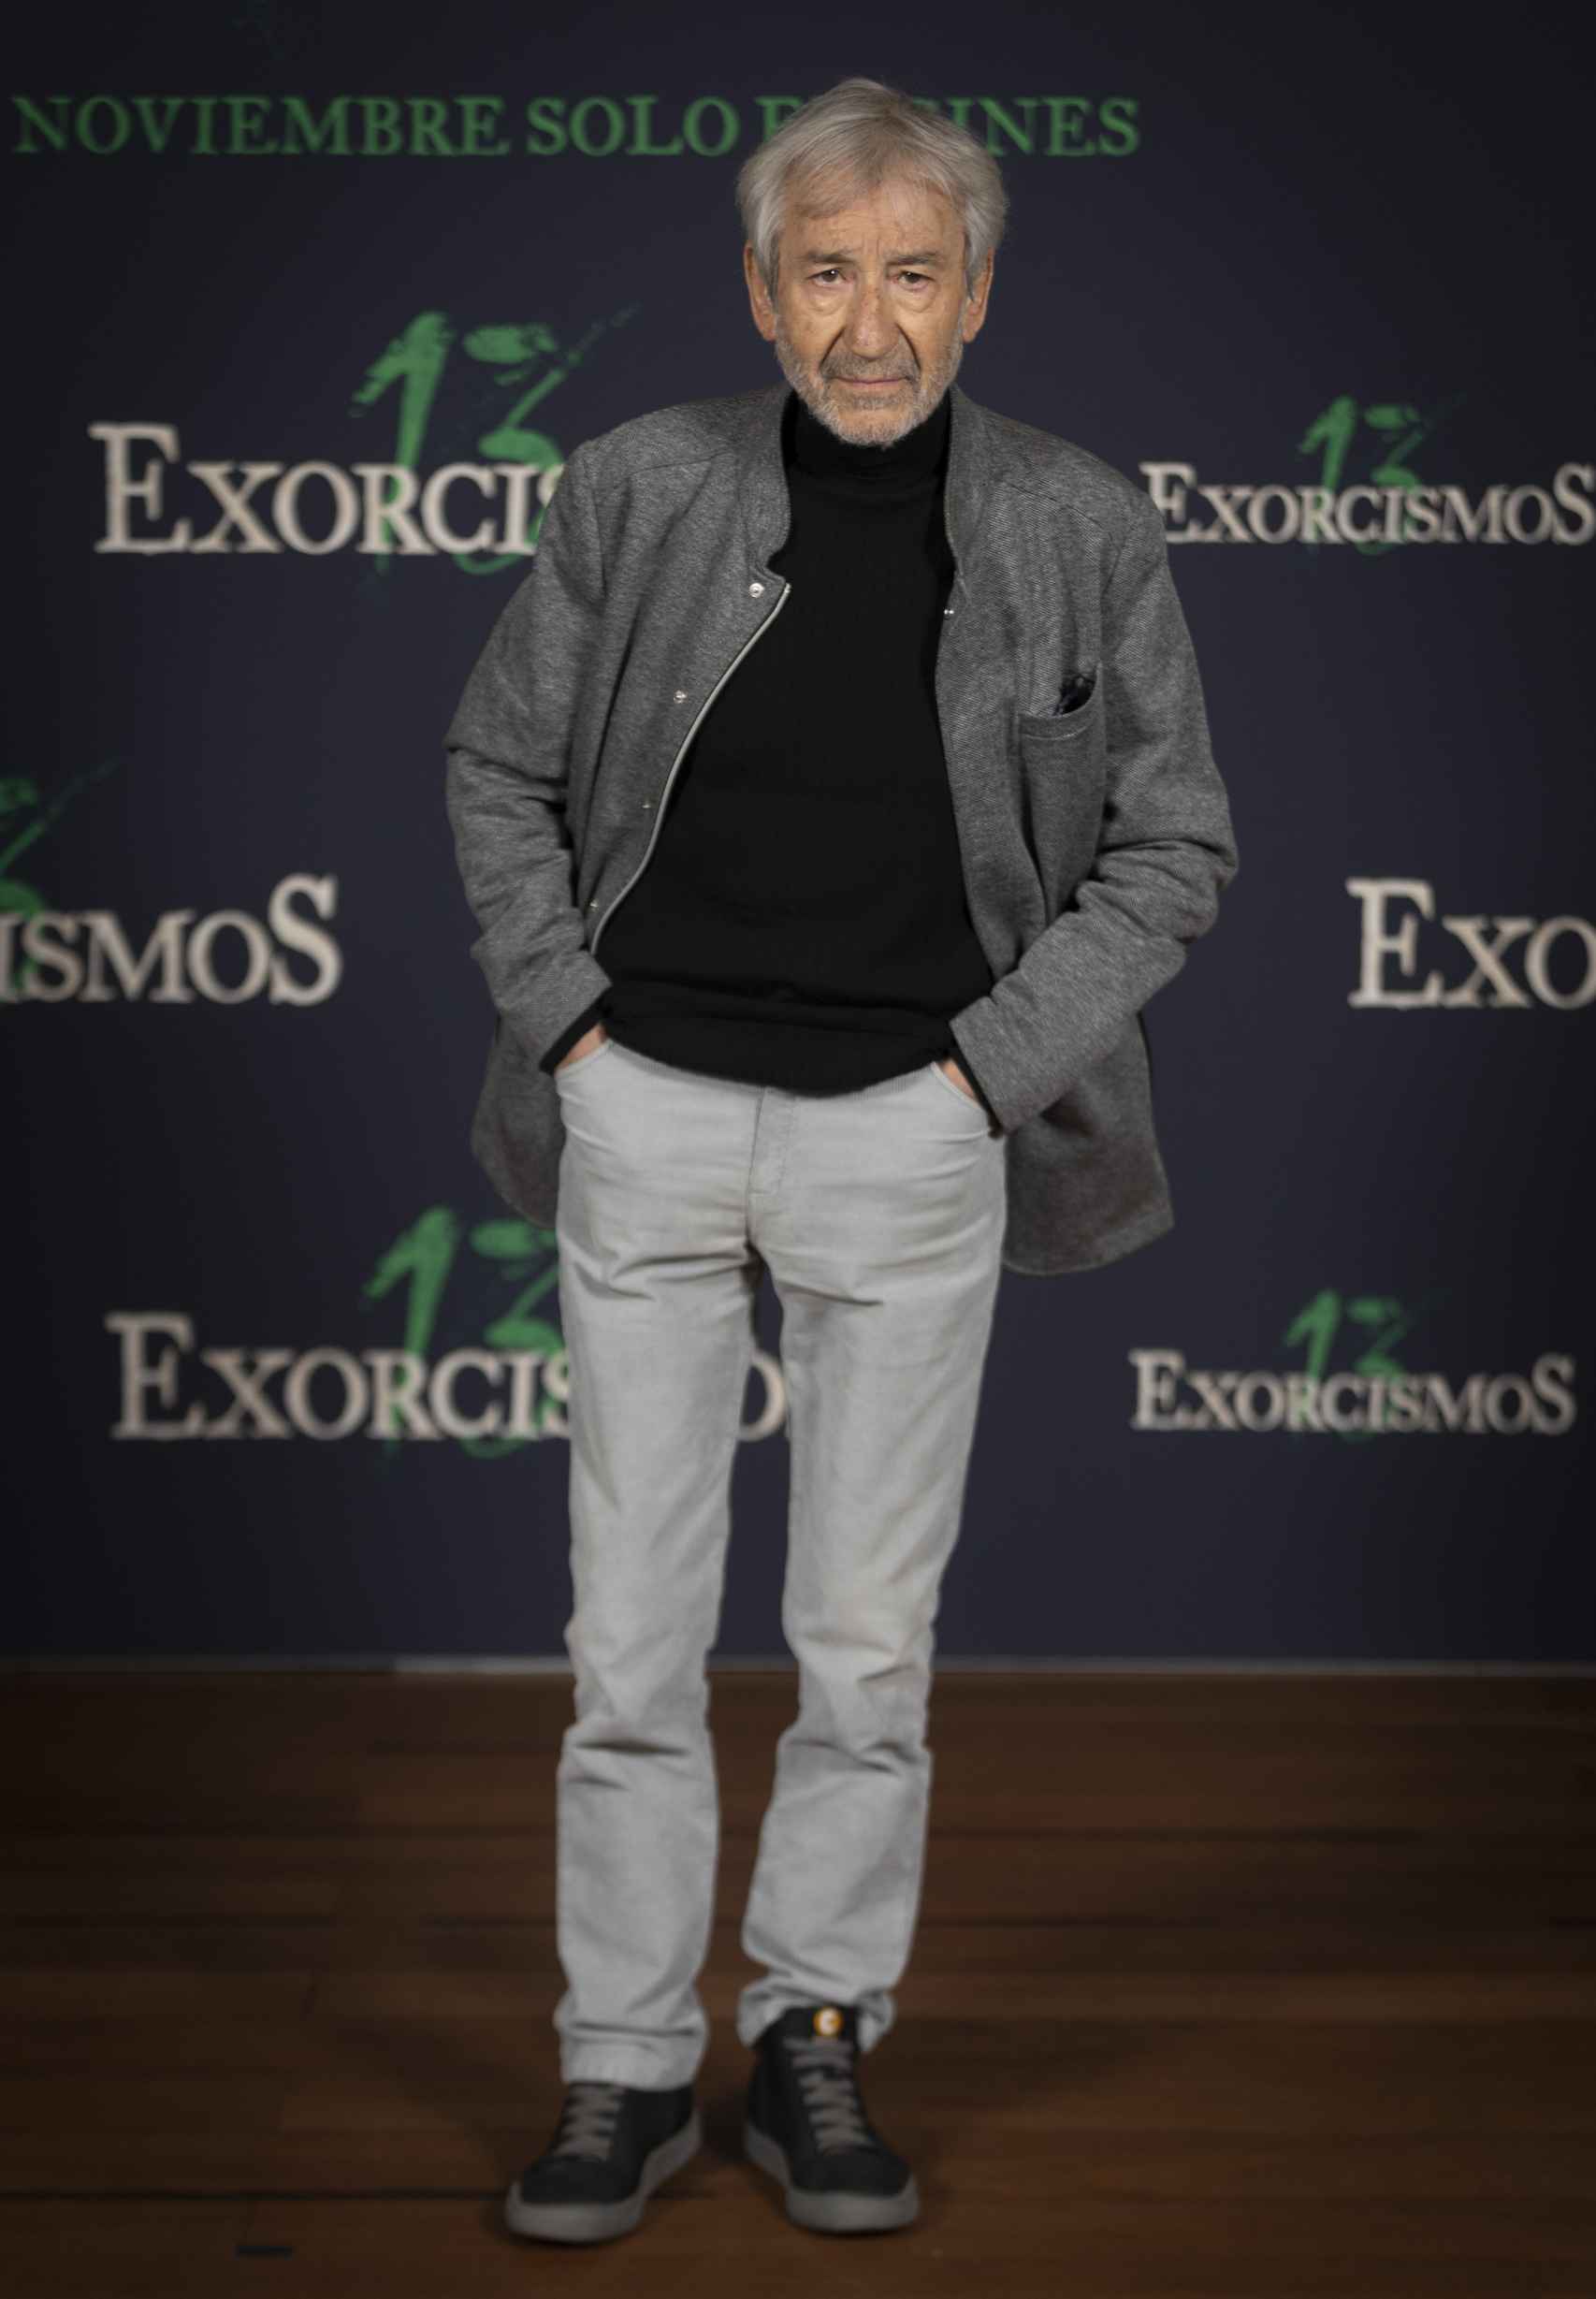 José Sacristán en la presentación de '13 exorcismos' en Madrid.